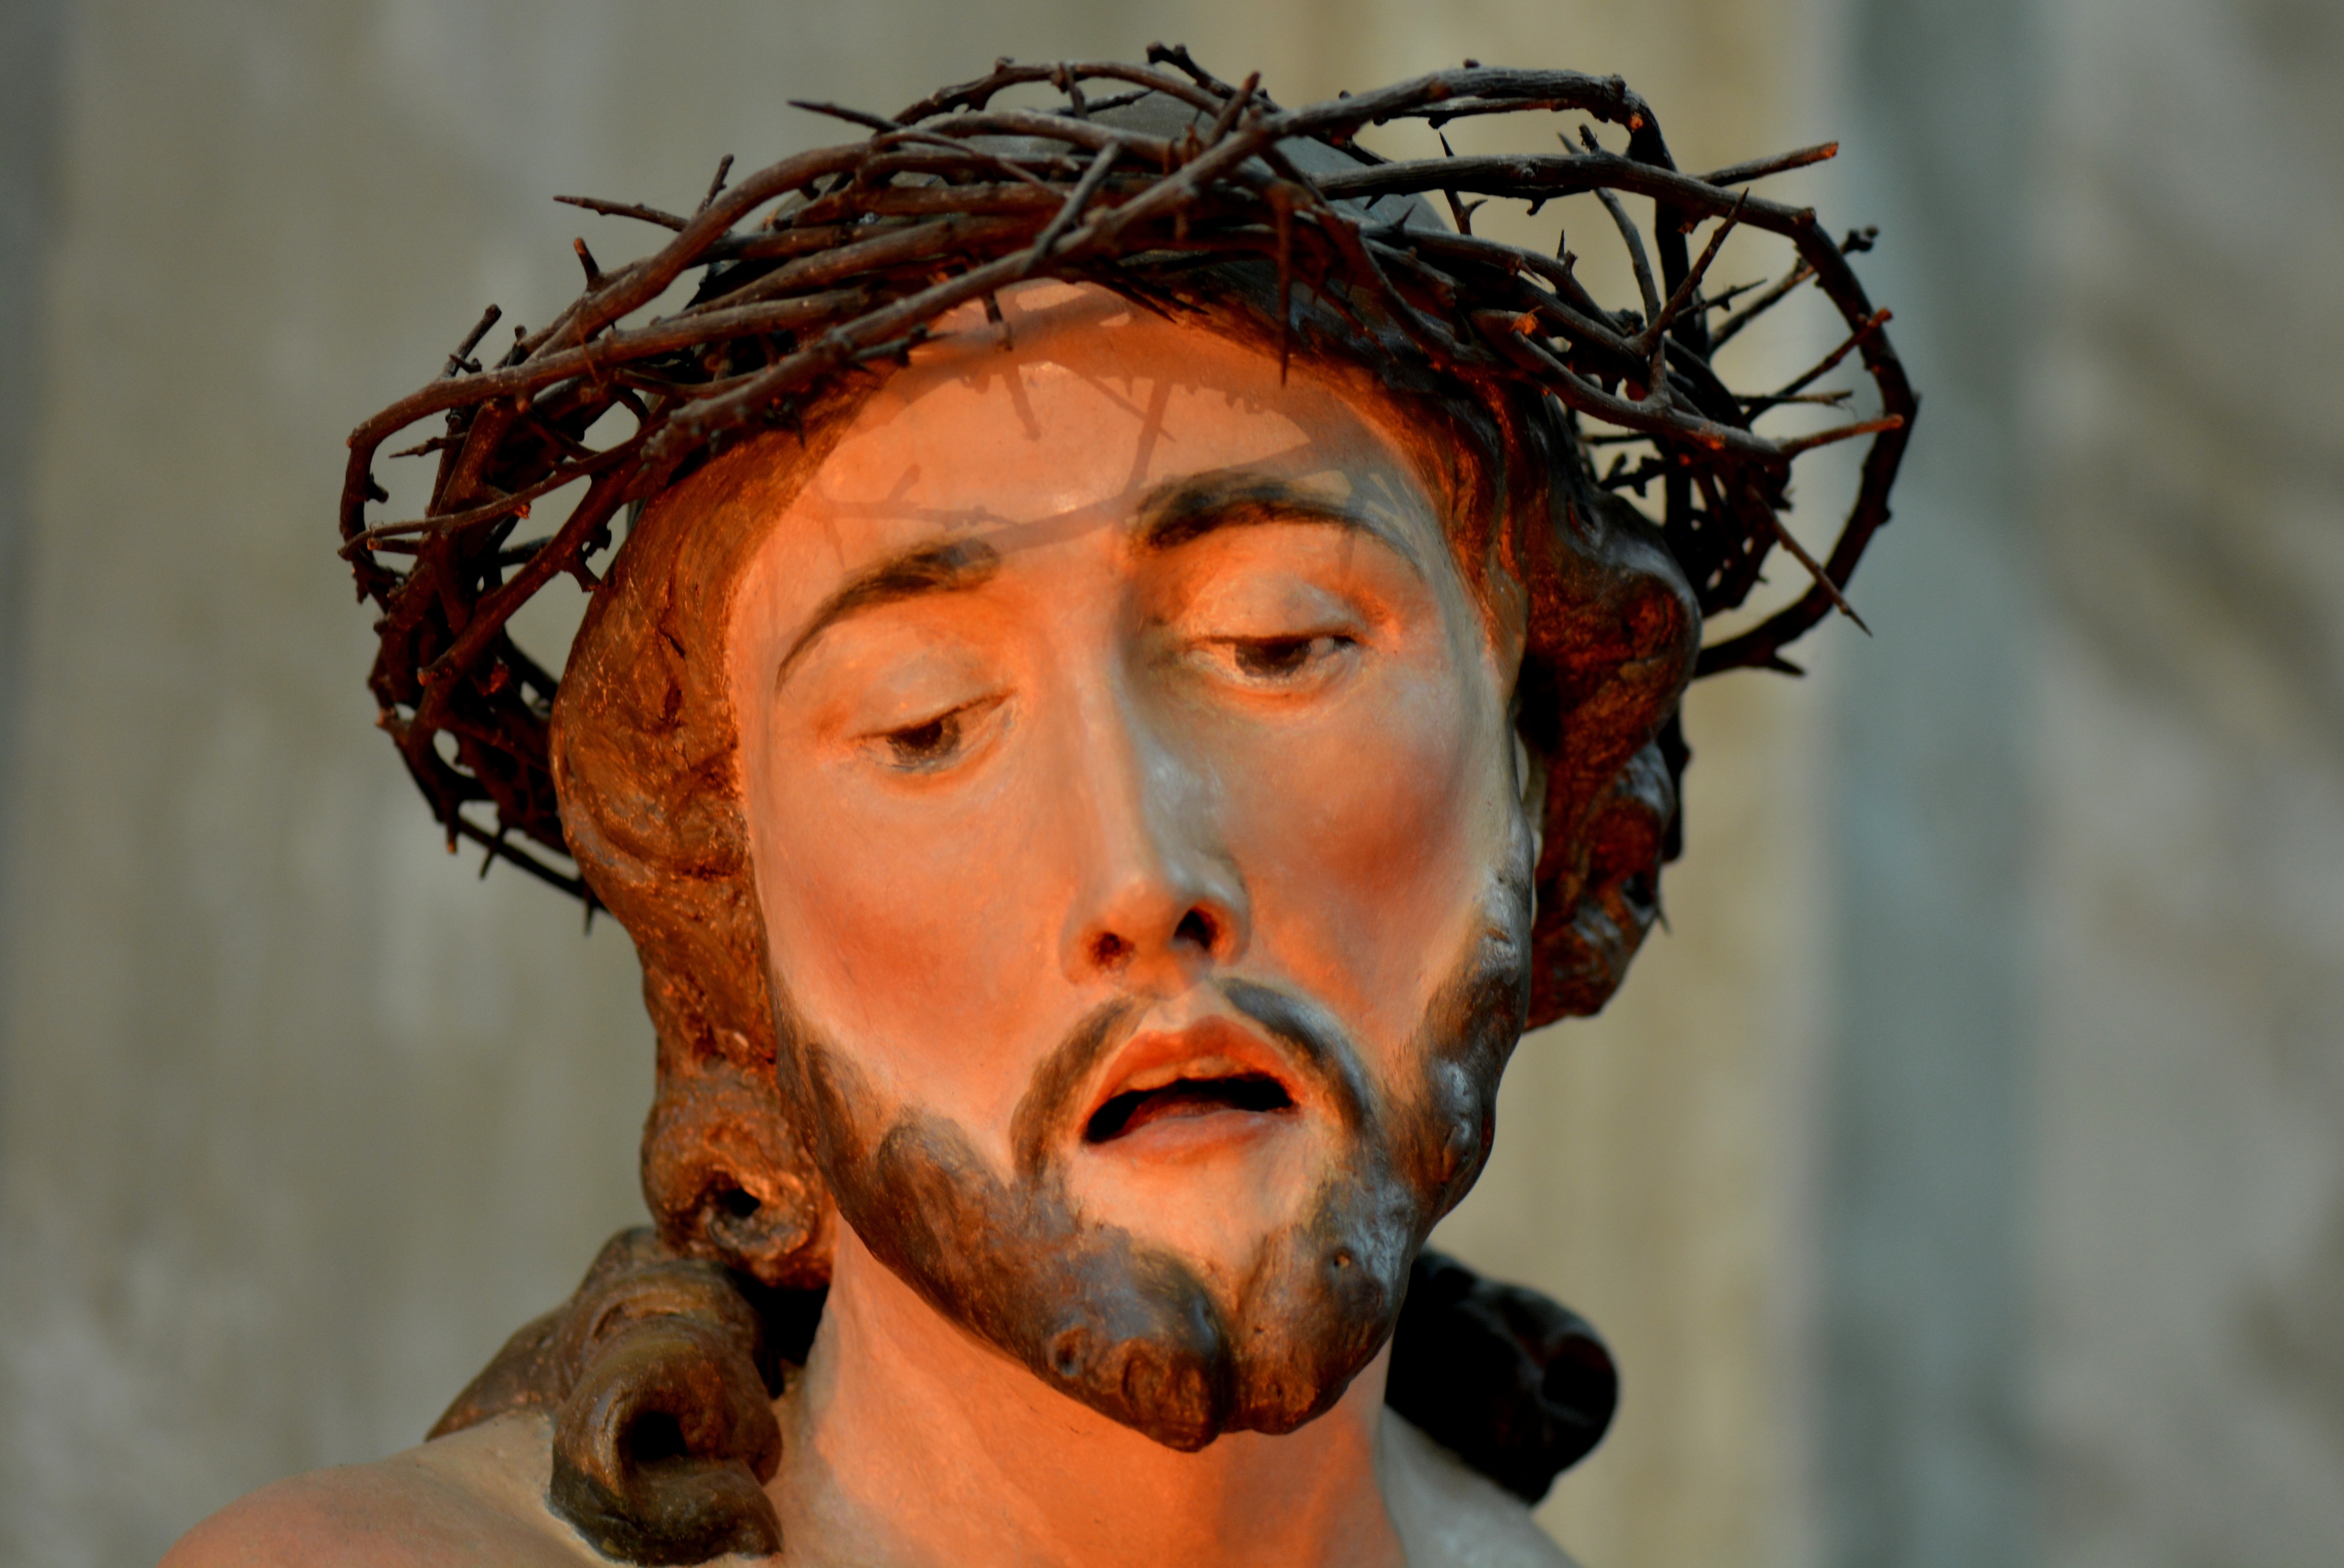 jesus christ ceramic figurine